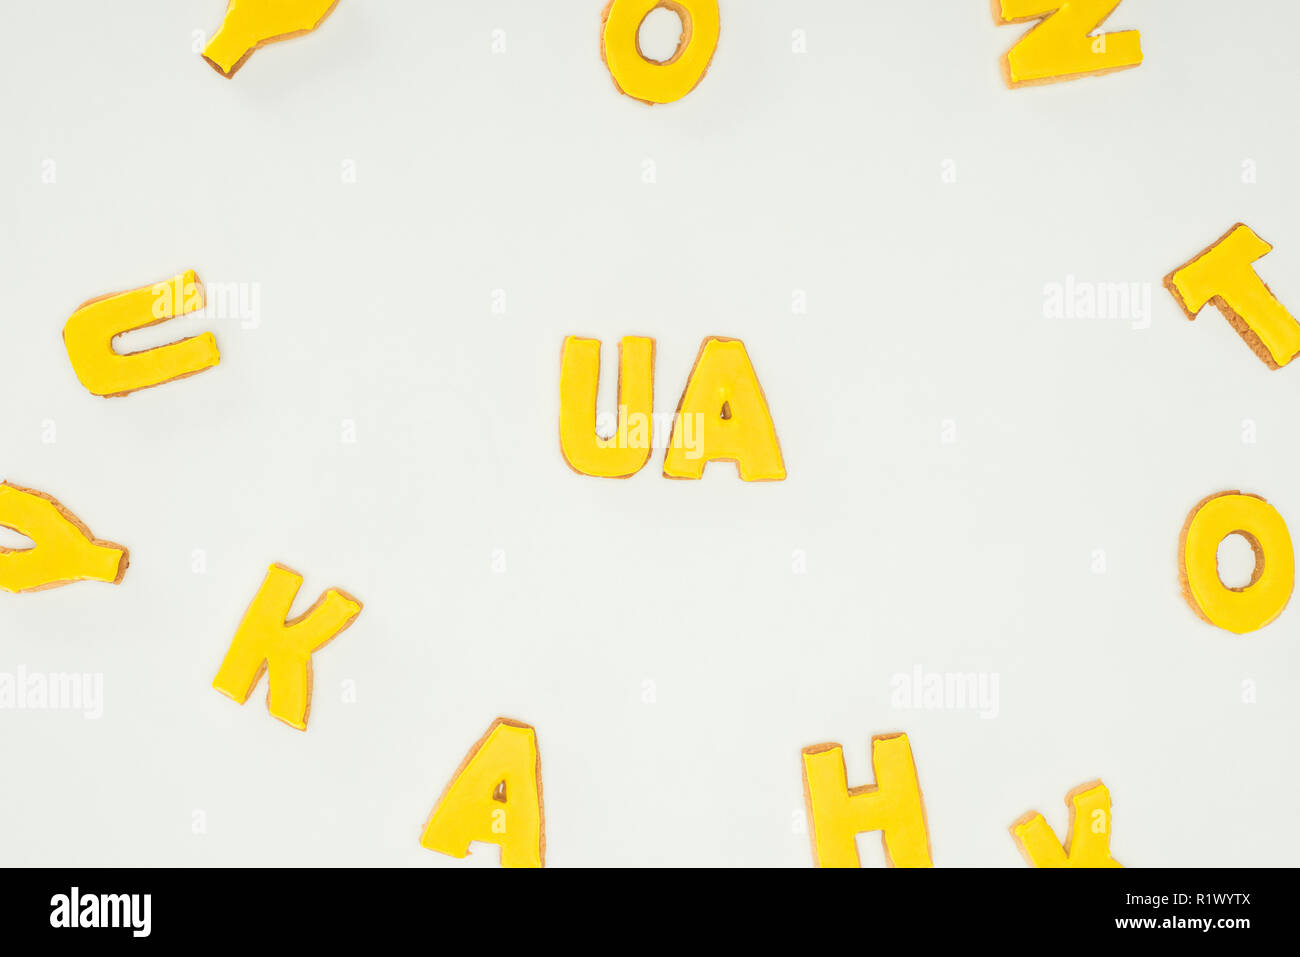 Ua Zeichen aus gelben Cookies und zerstreut Alphabet Buchstaben auf weißem Hintergrund Stockfoto